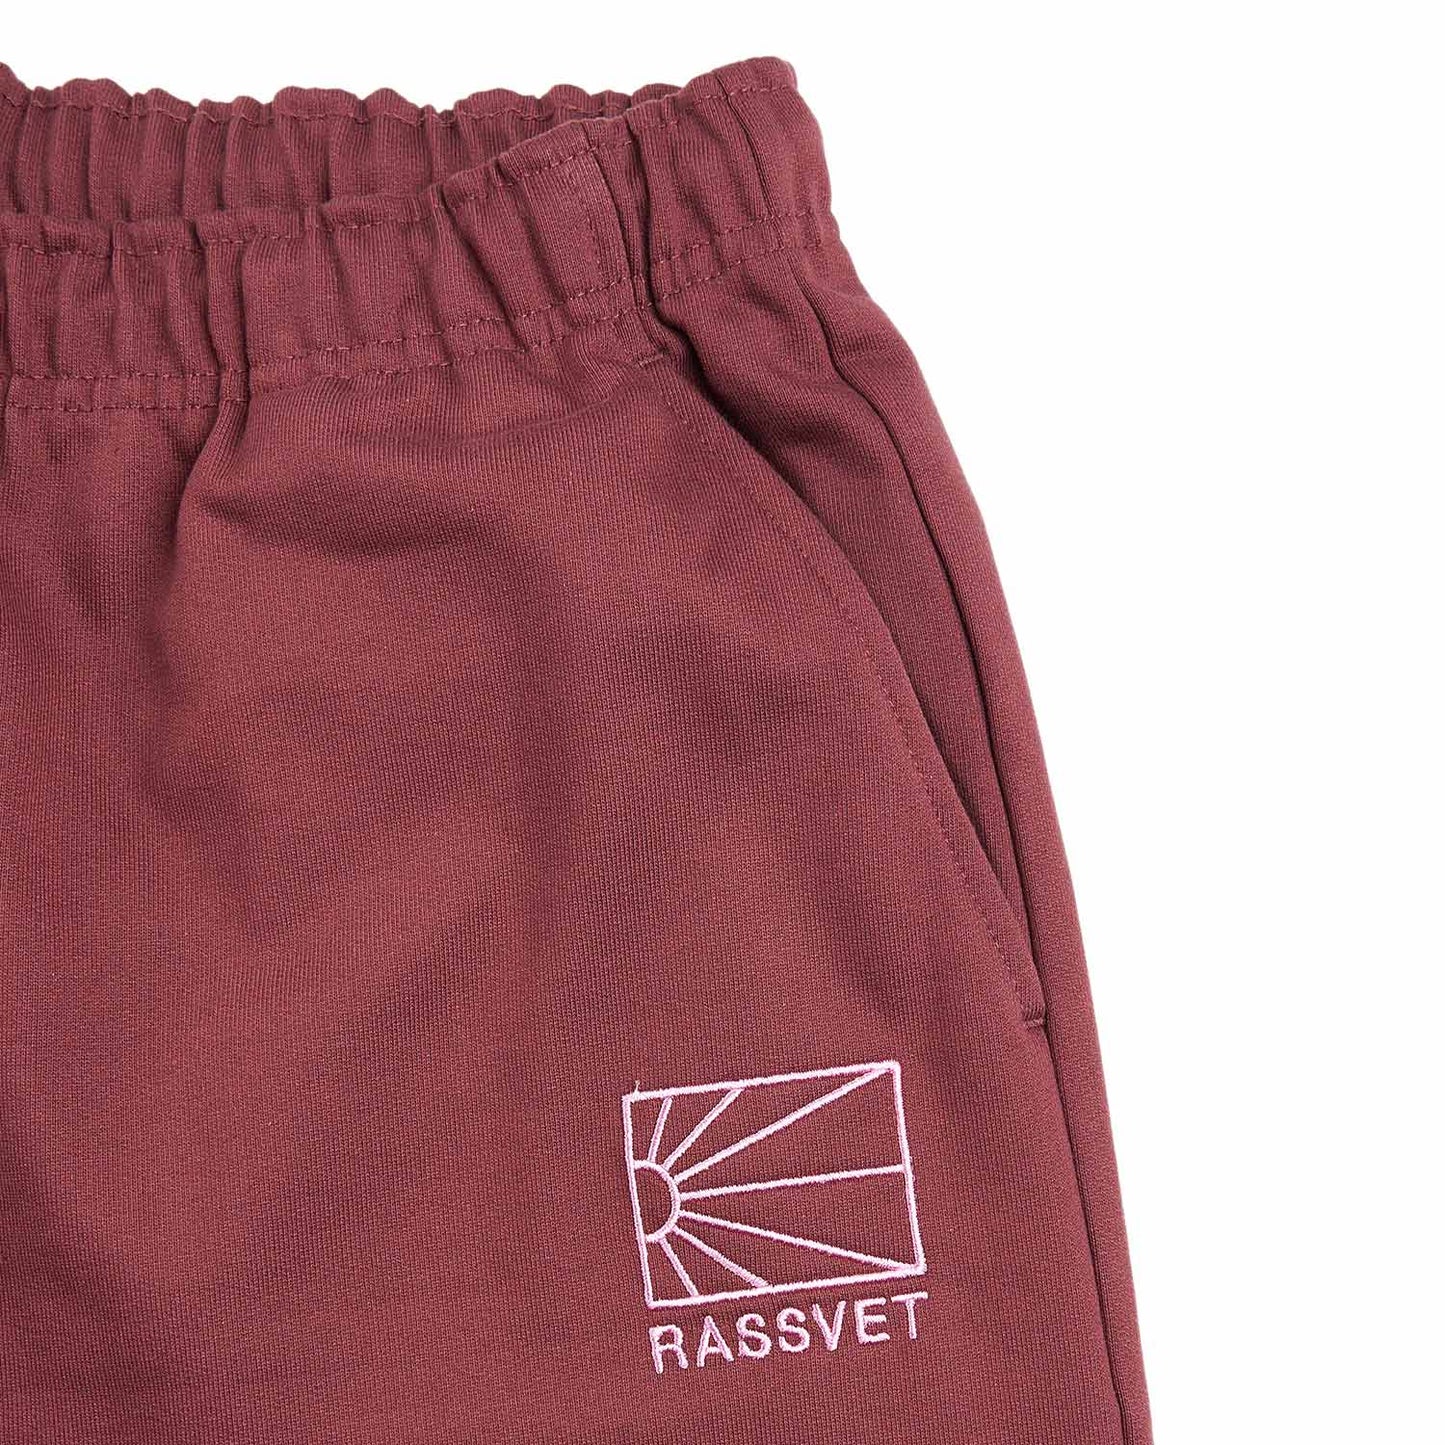 rassvet logo joggers knitted (burgundy)